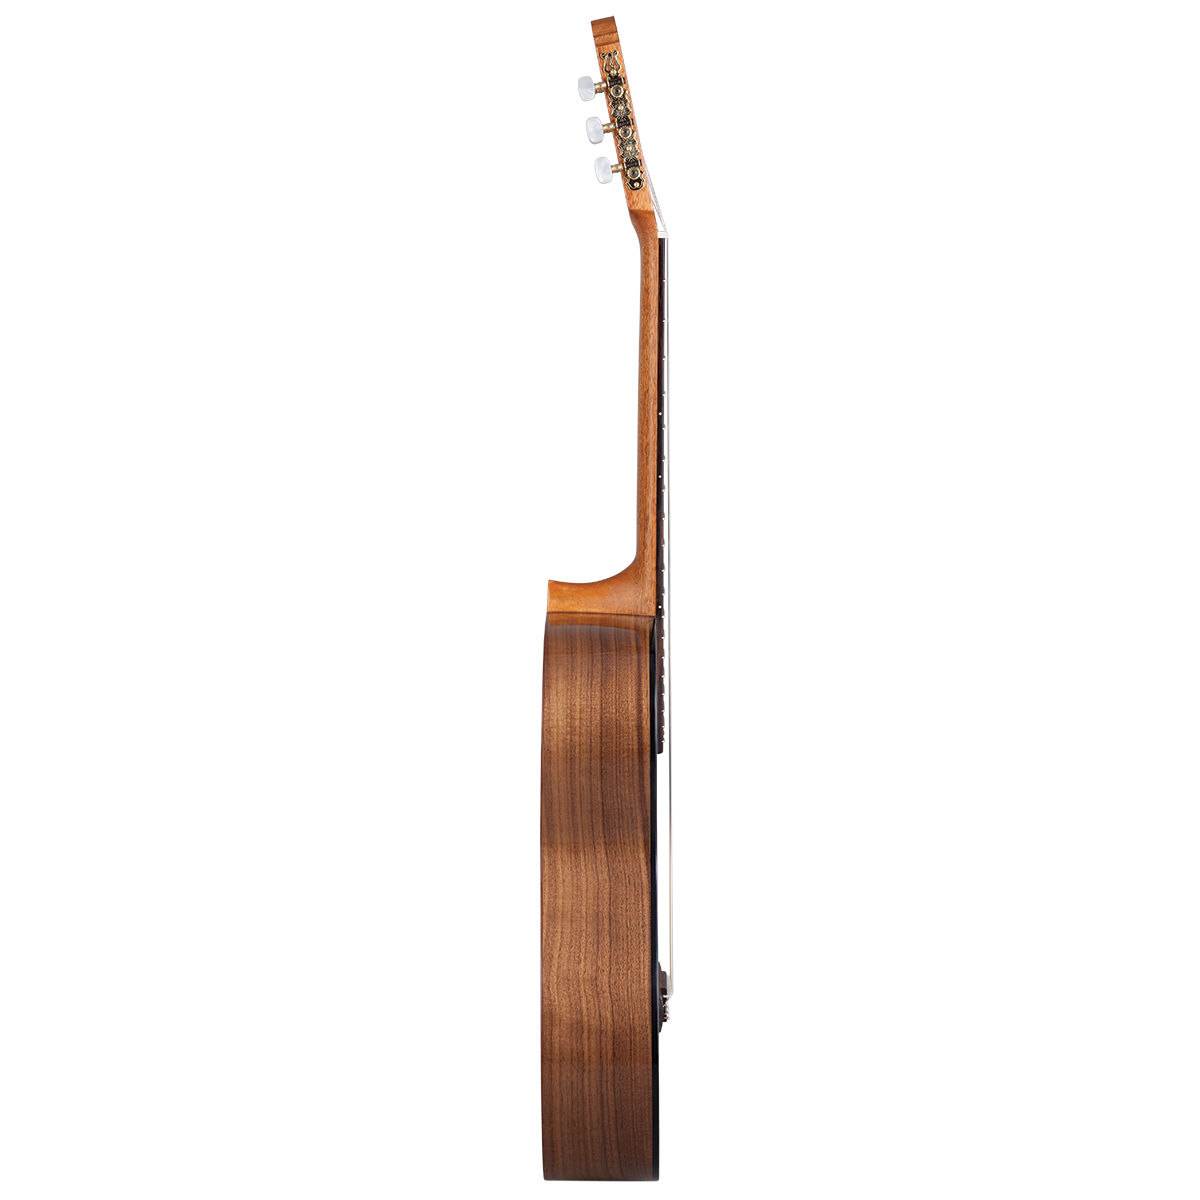 Kremona R65S Rondo Spruce / Walnut Classic Guitar with Case